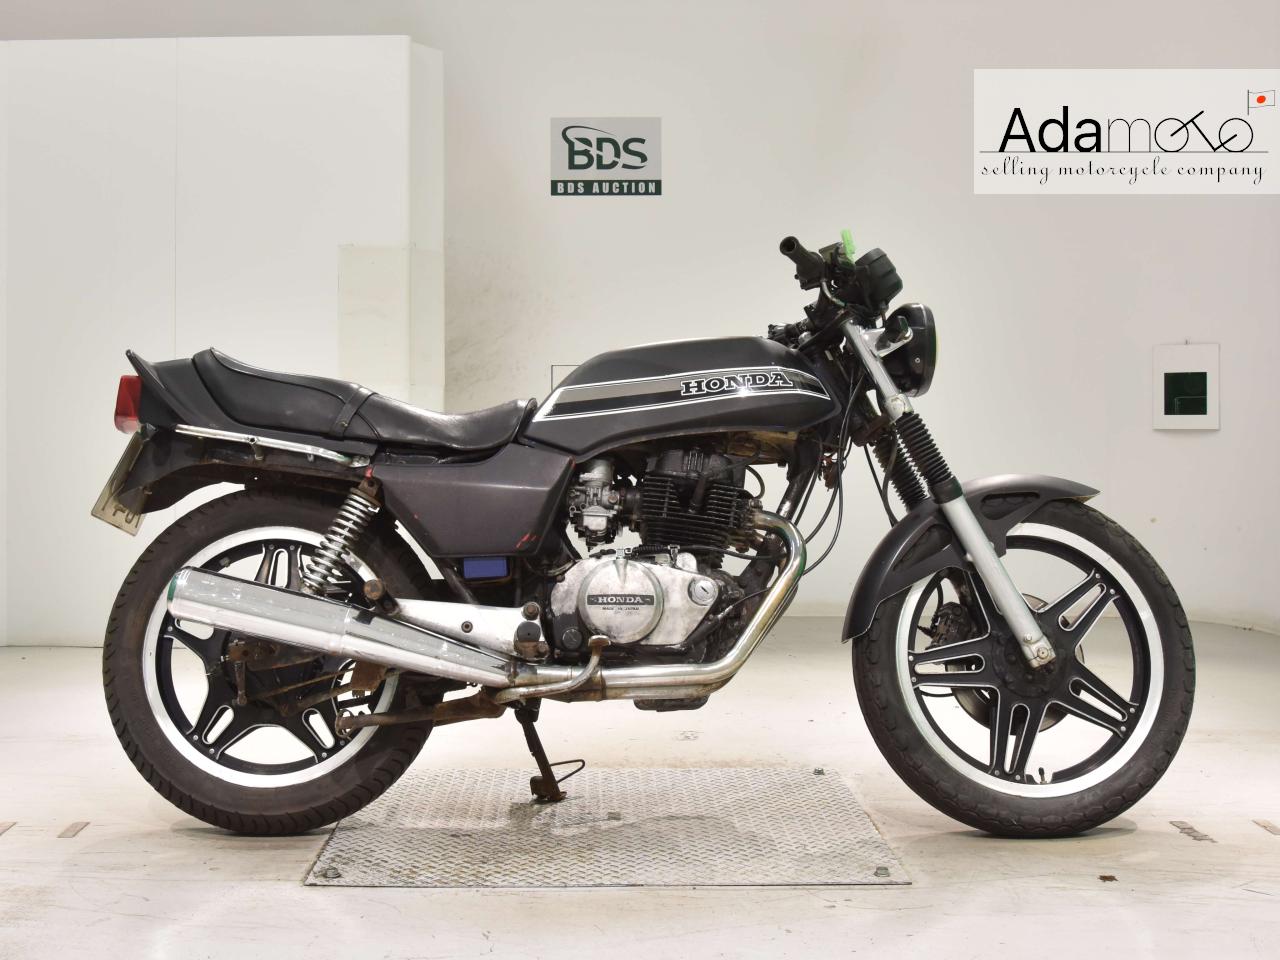 Honda CB250N - Adamoto - Motorcycles from Japan